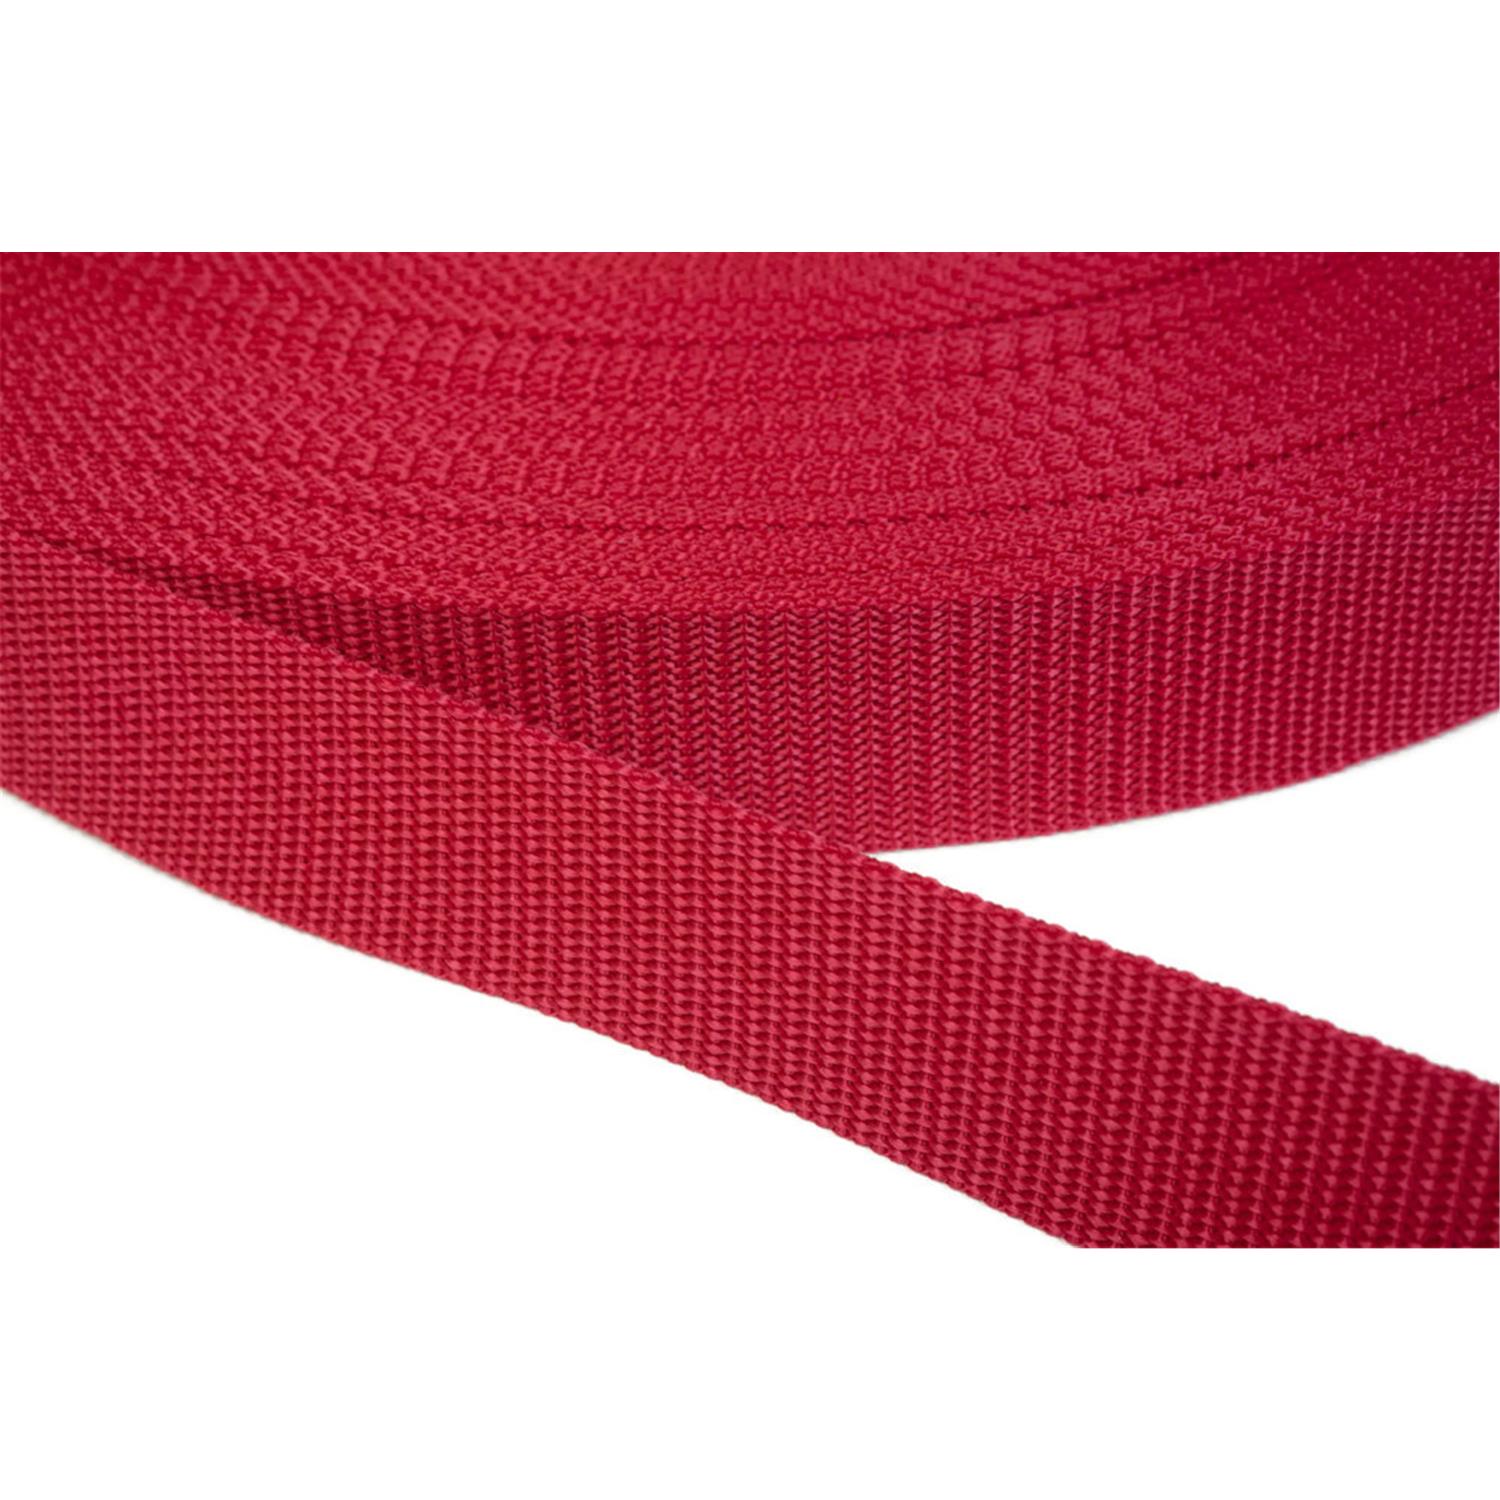 Gurtband 40mm breit aus Polypropylen in 41 Farben 19 - rot 12 Meter